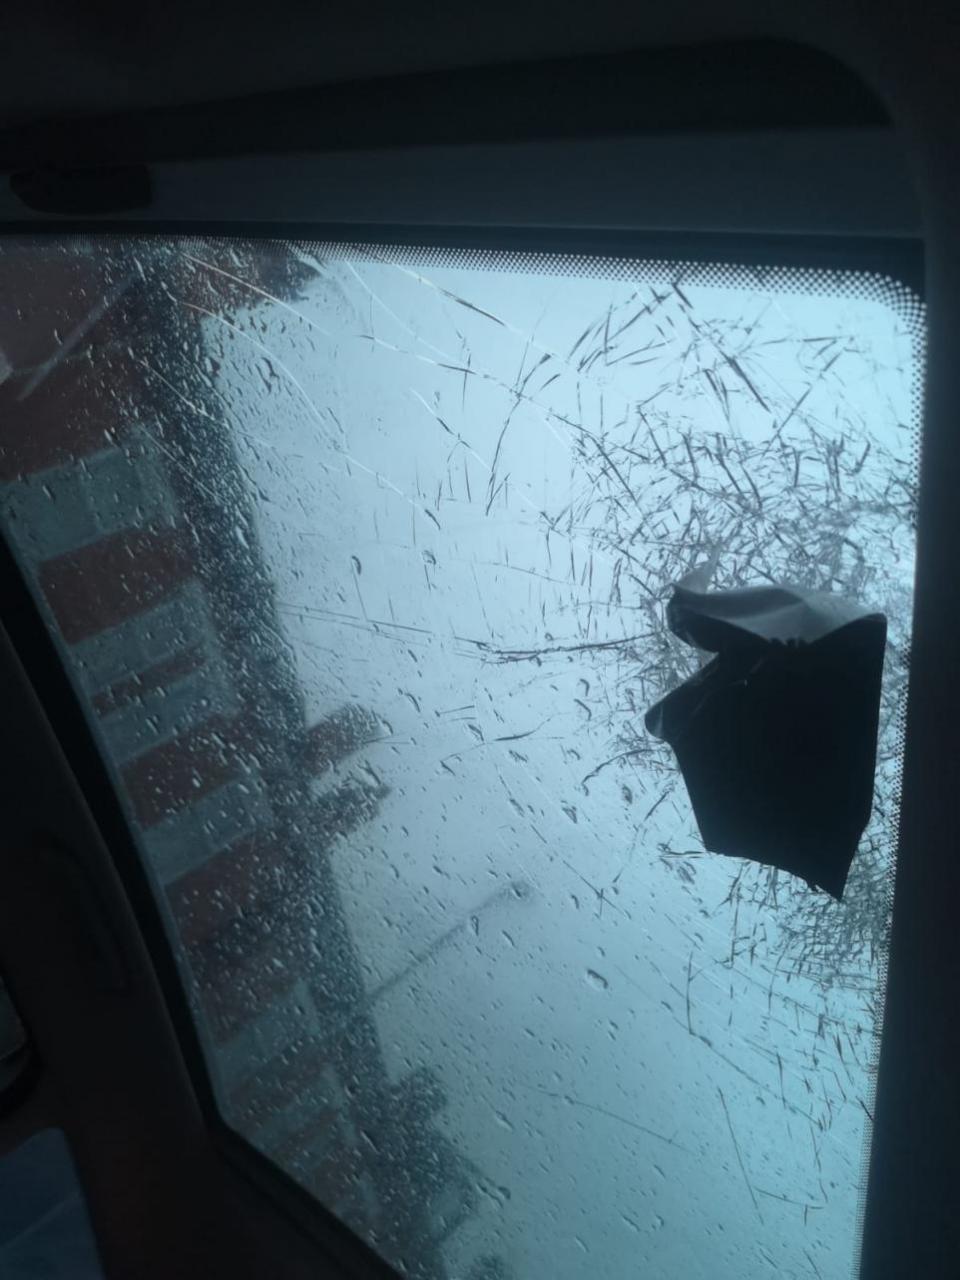 Worcester News: Ladrillo que destrozó el techo de cristal.